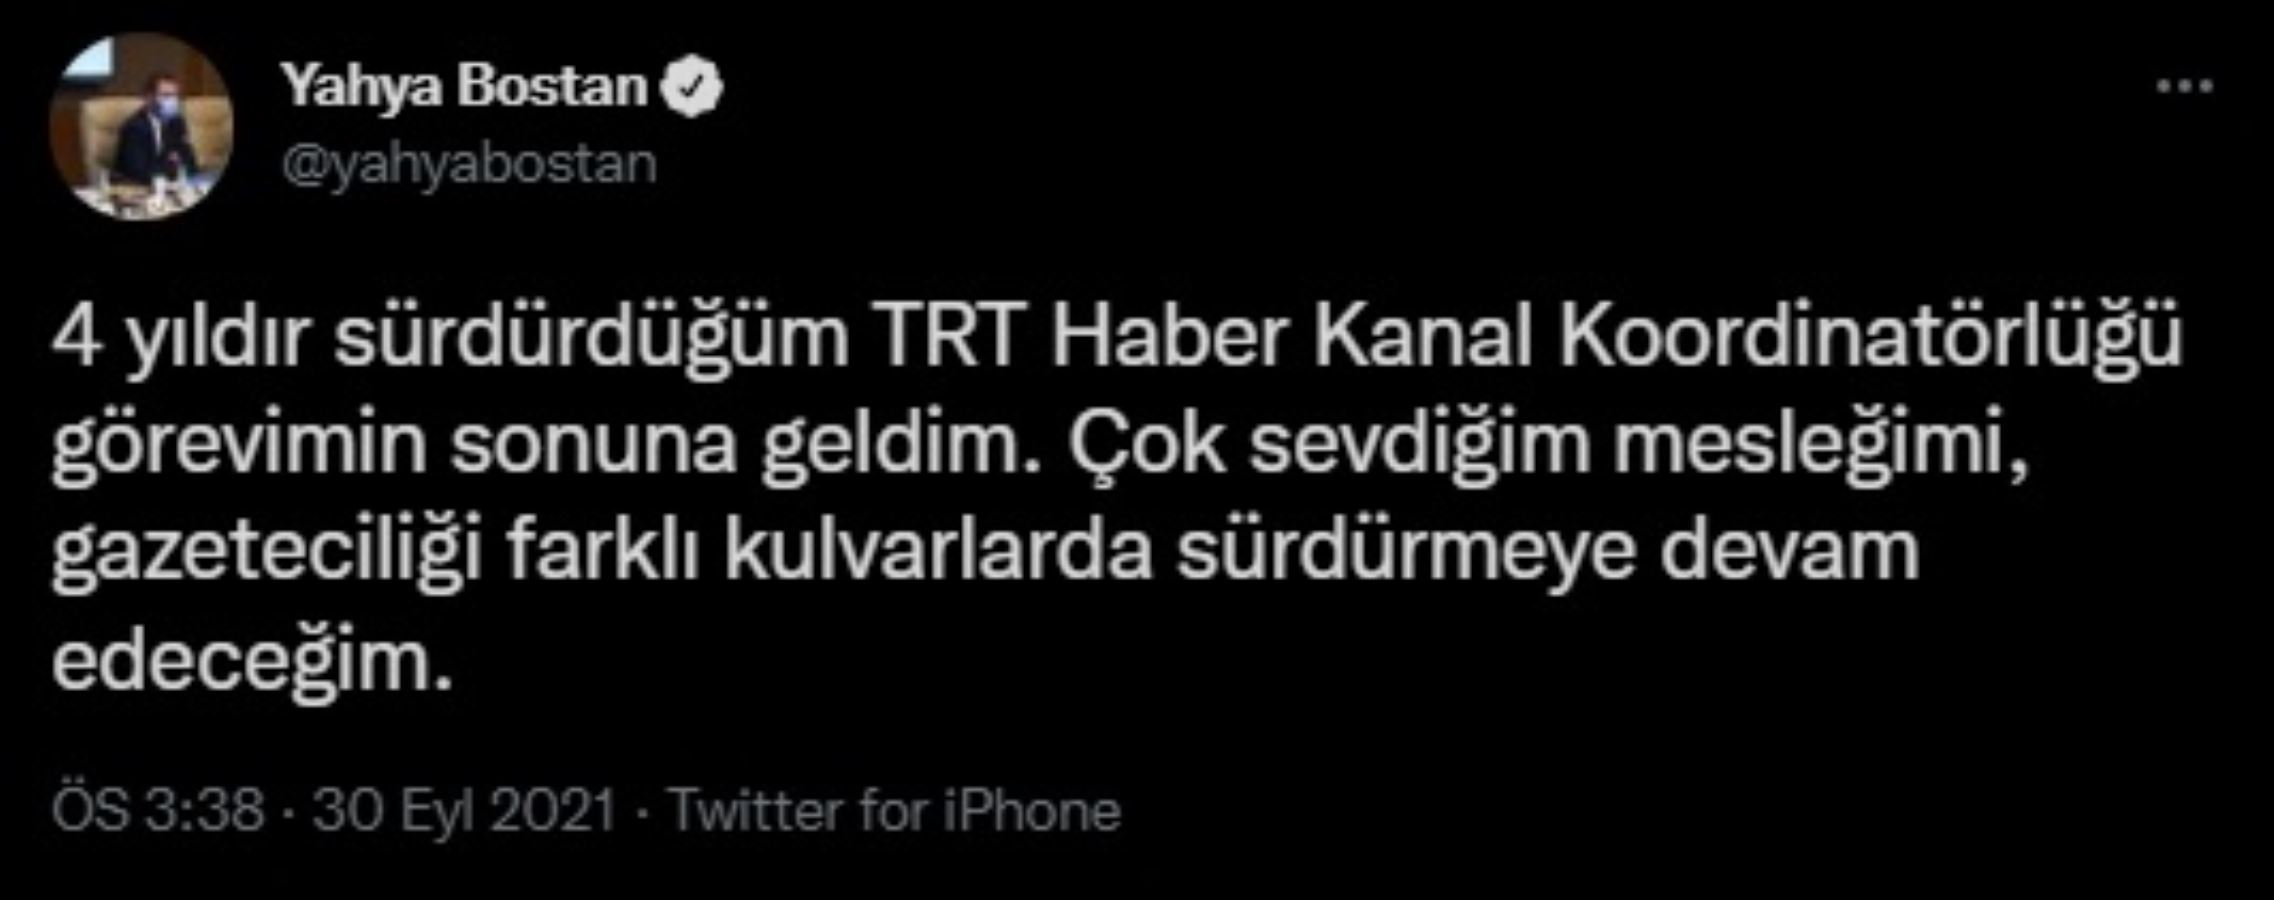 TRT'de üst seviye ayrılık: Gazeteciliği farklı kulvarlarda sürdürmeye devam edeceğim